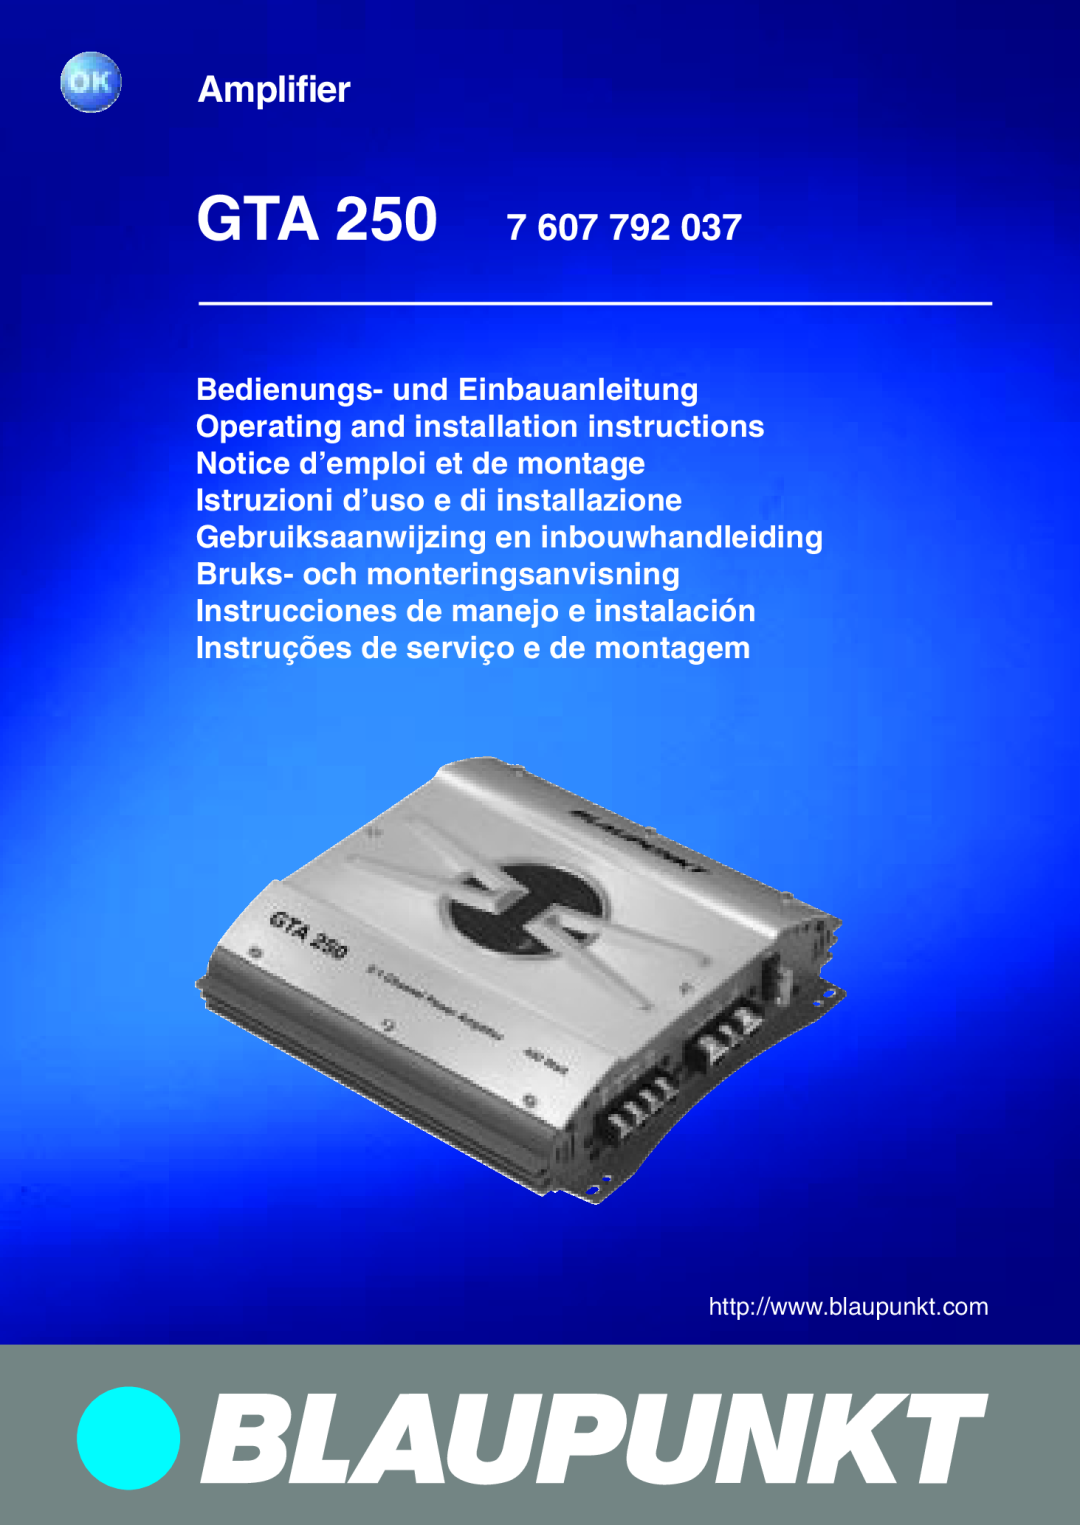 Blaupunkt GTA 250 installation instructions Amplifier GTA 